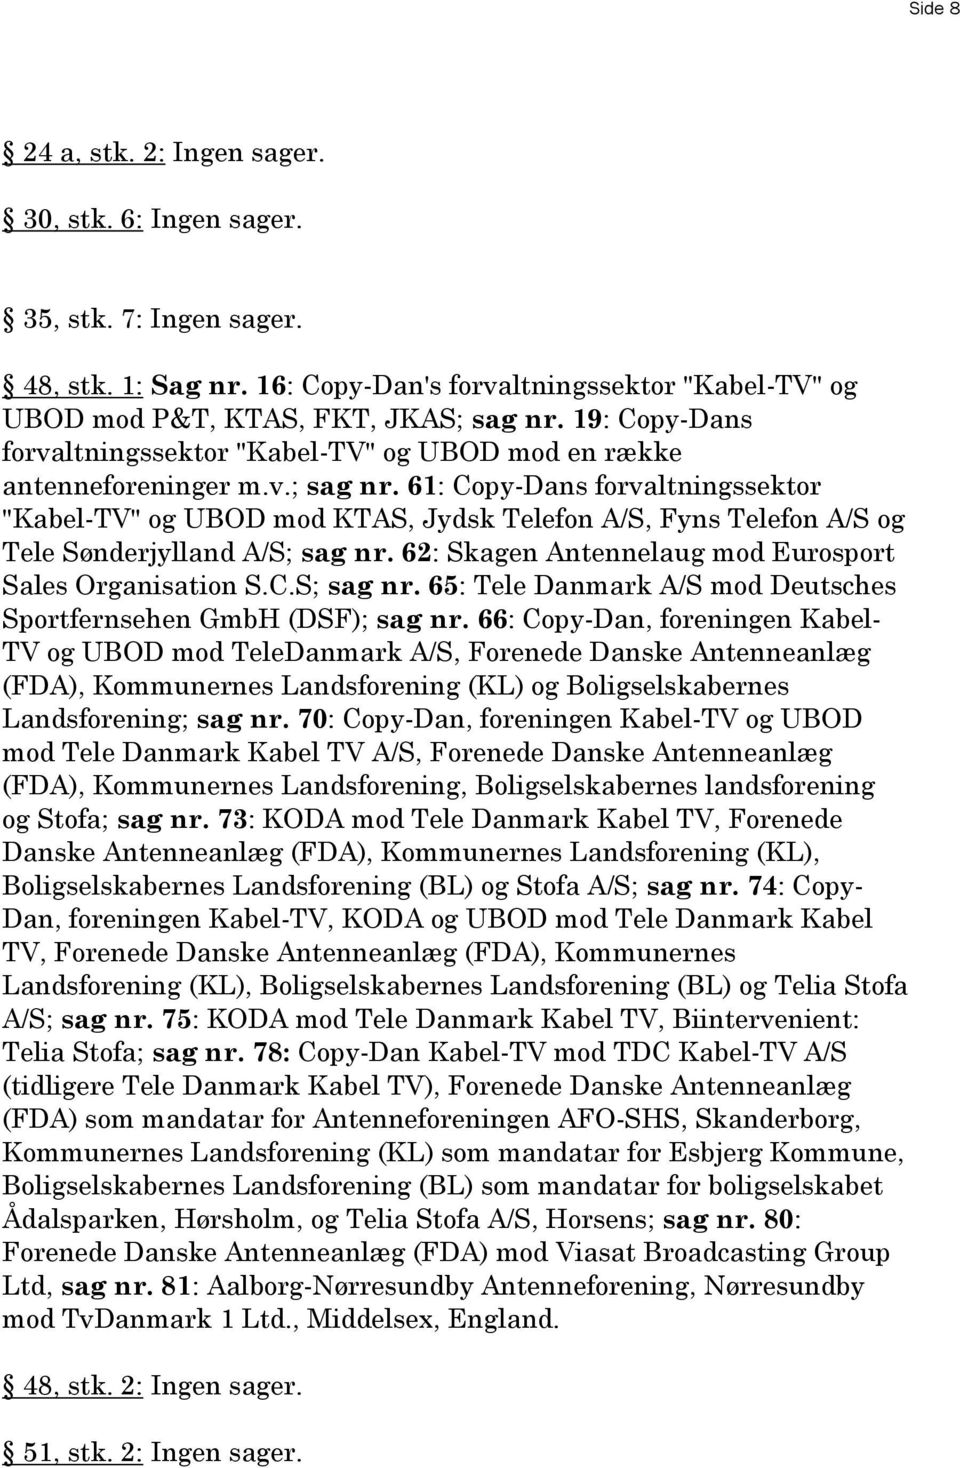 61: Copy-Dans forvaltningssektor "Kabel-TV" og UBOD mod KTAS, Jydsk Telefon A/S, Fyns Telefon A/S og Tele Sønderjylland A/S; sag nr.